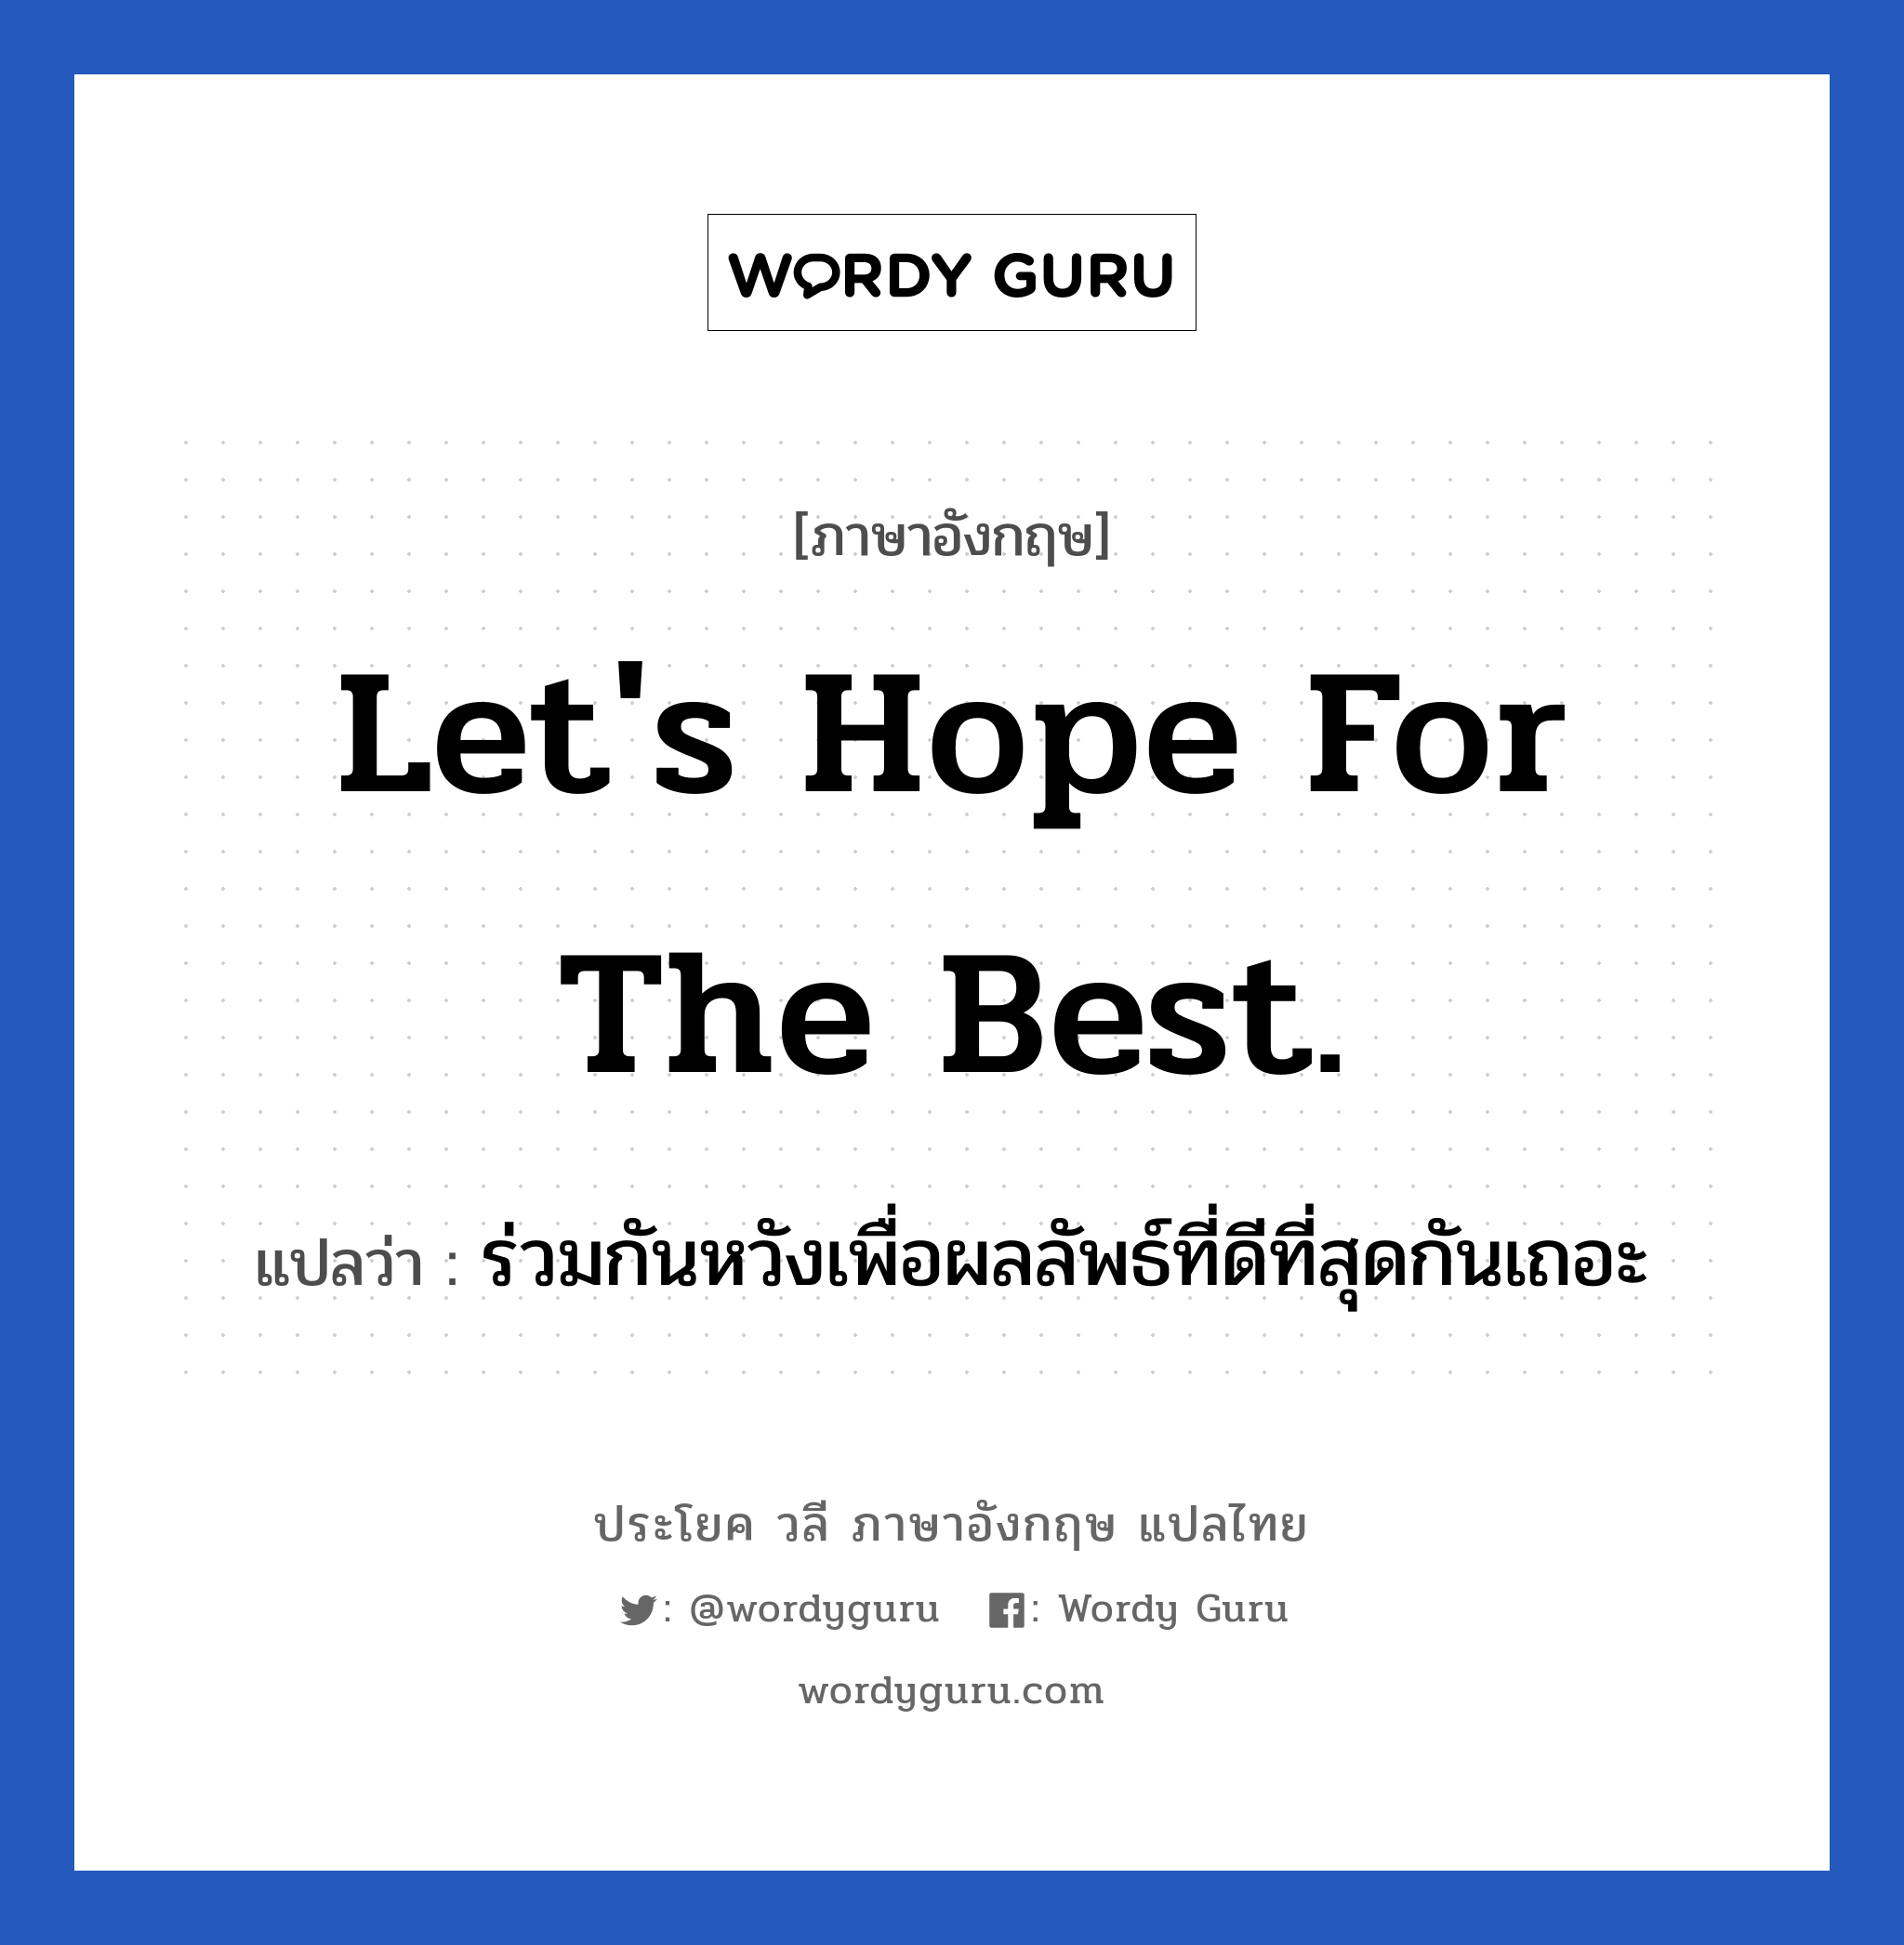 Let's hope for the best. แปลว่า?, วลีภาษาอังกฤษ Let's hope for the best. แปลว่า ร่วมกันหวังเพื่อผลลัพธ์ที่ดีที่สุดกันเถอะ